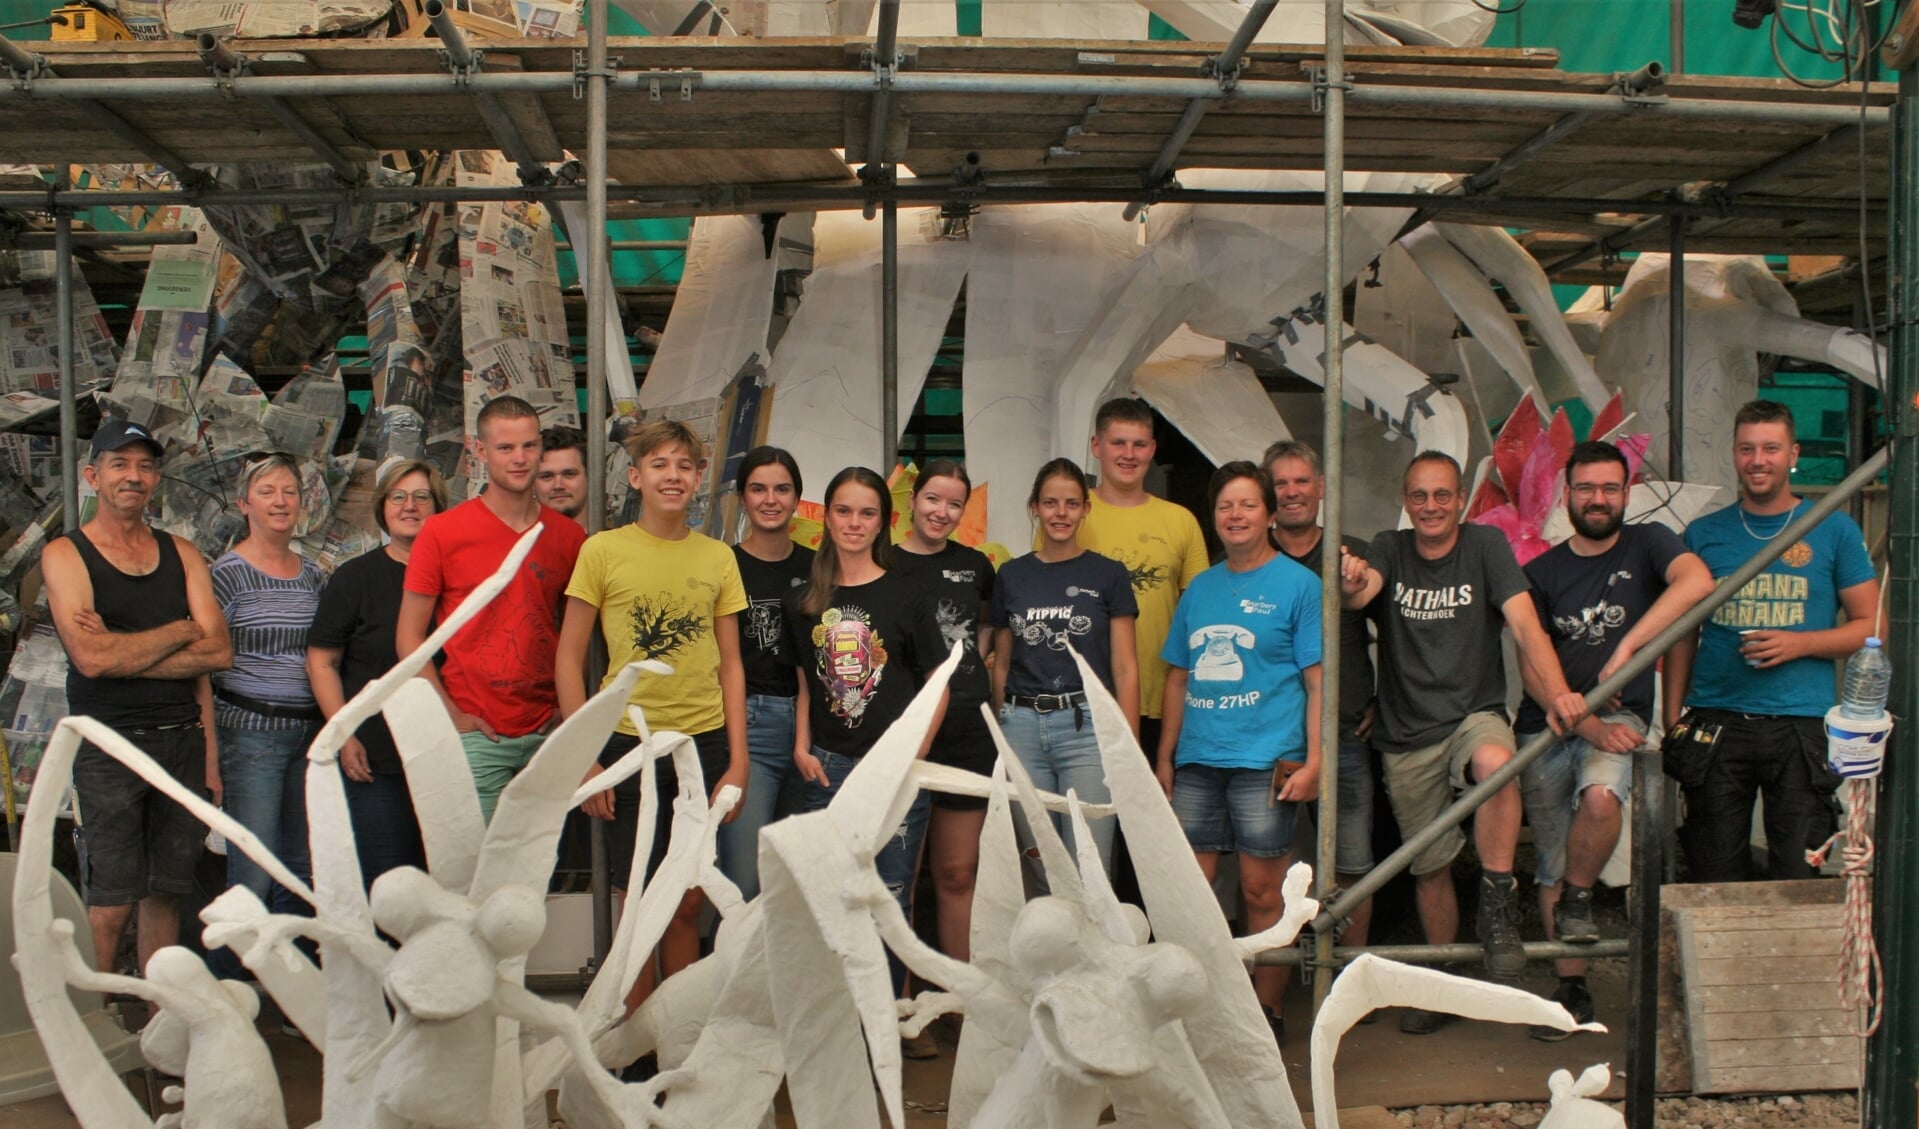 Corsogroep Harbers-Paul met hun maquette Driftkikkers op de voorgrond. Foto: Jos Betting